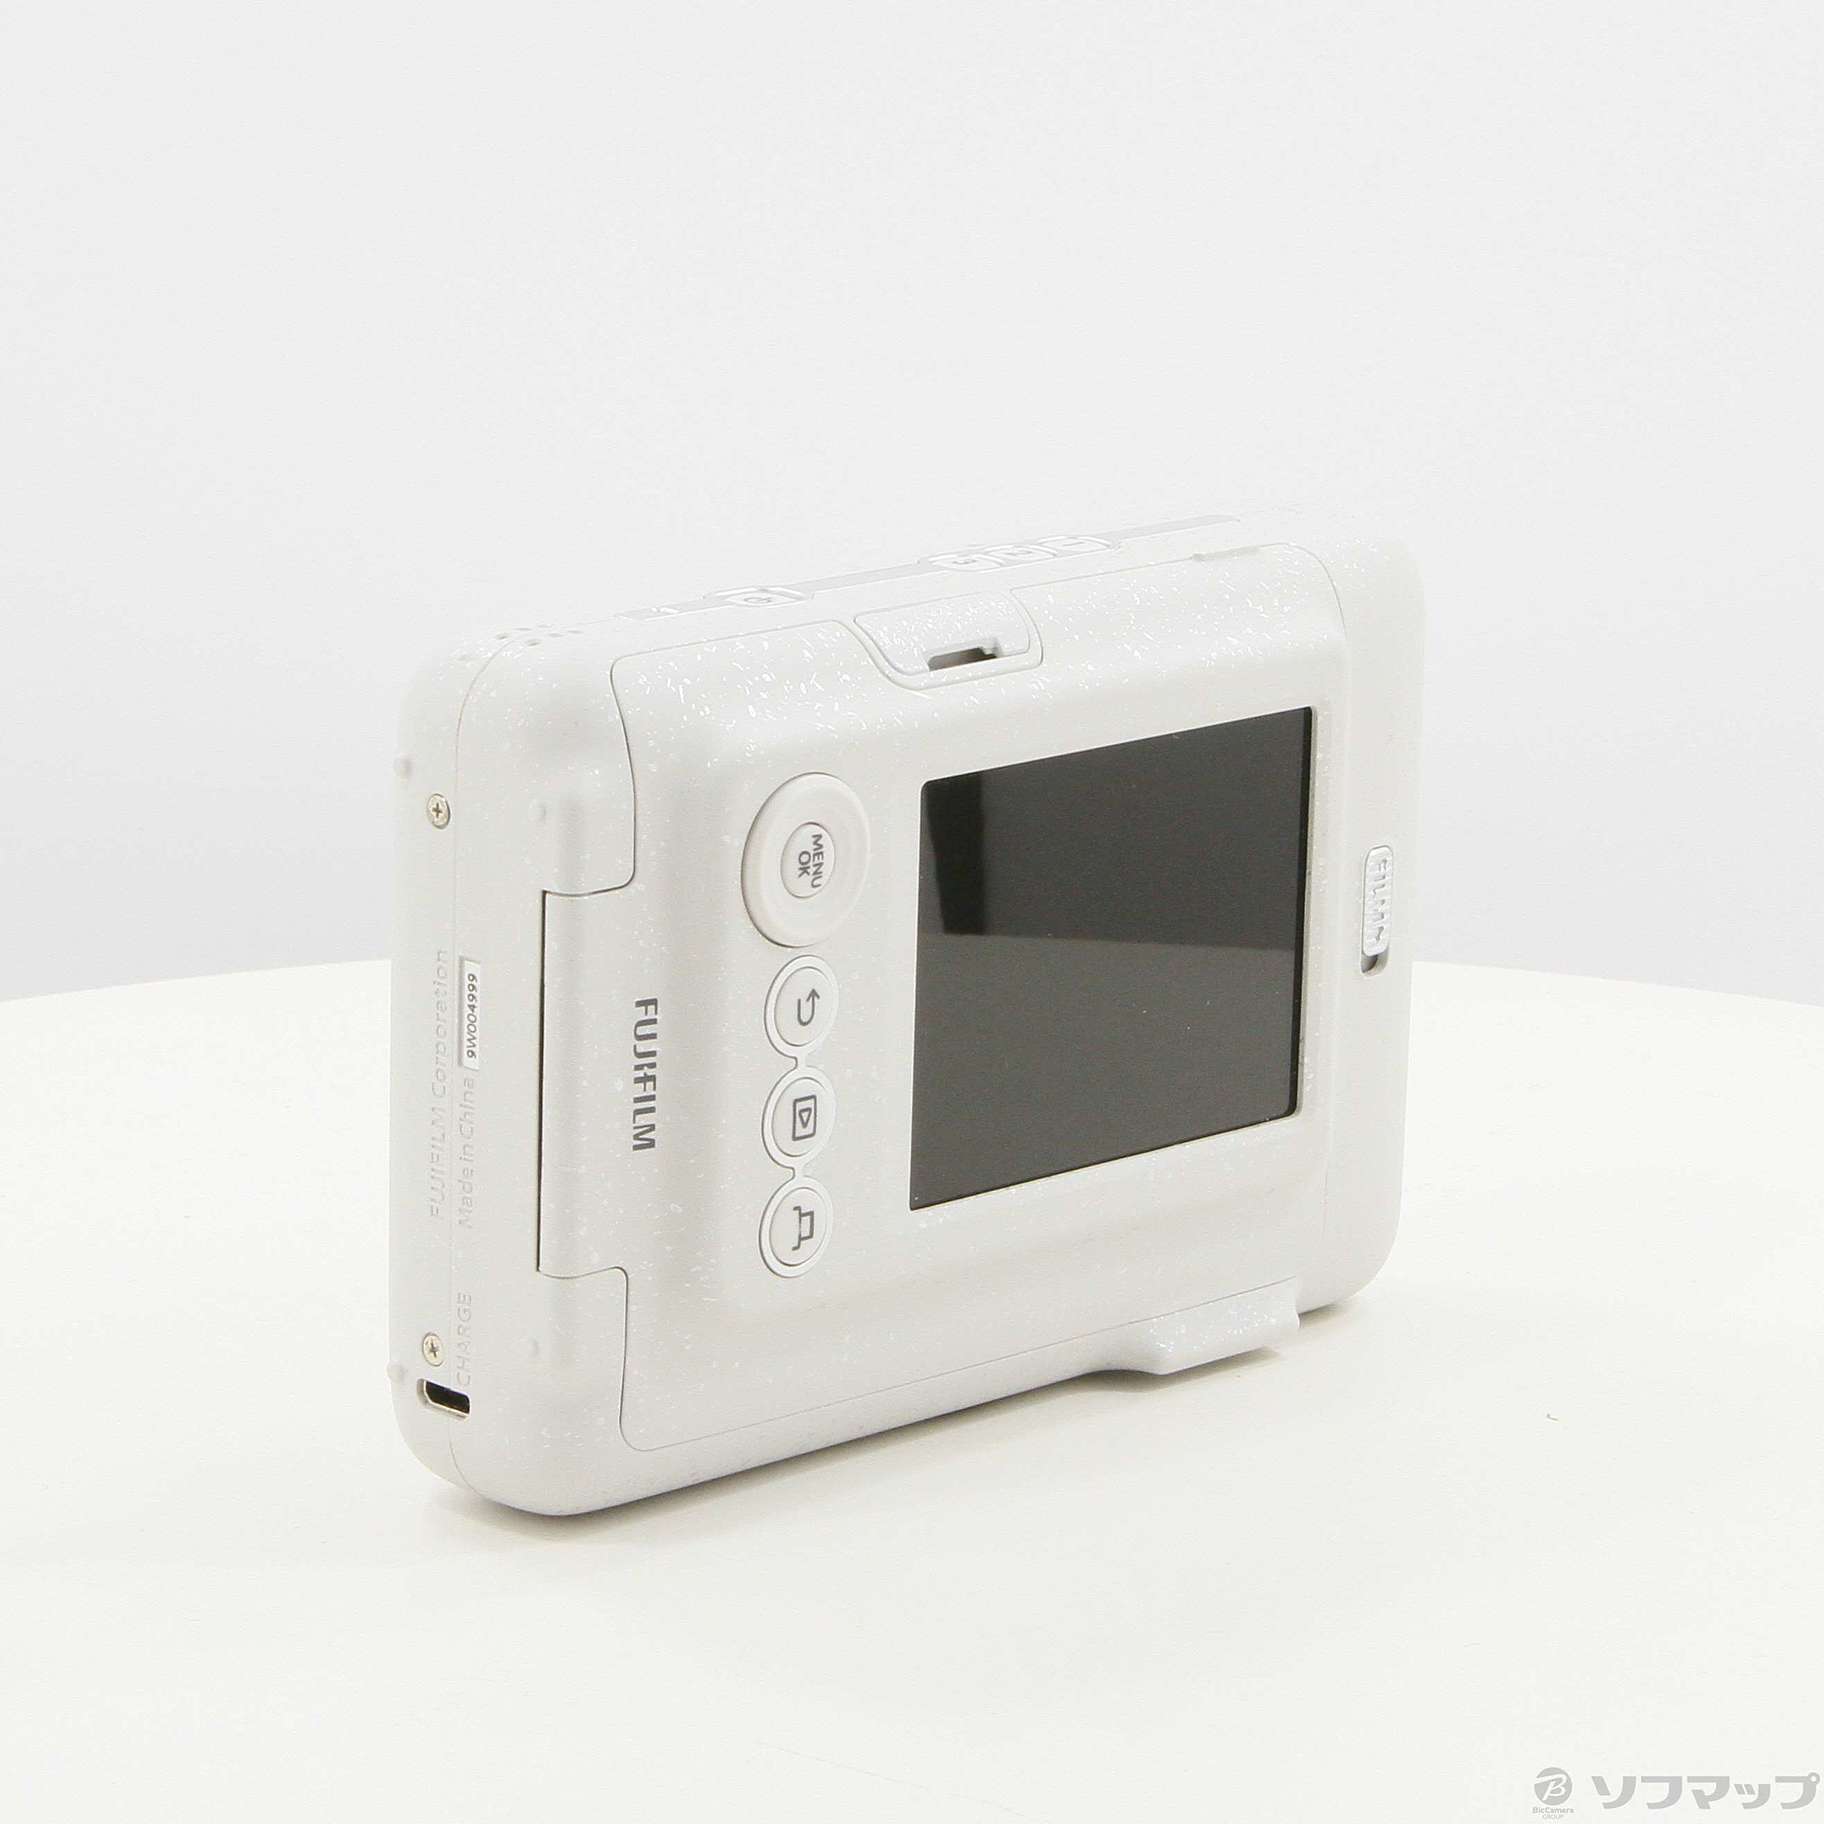 未開封新品 チェキ instax mini LiPlay ストーンホワイト - フィルムカメラ